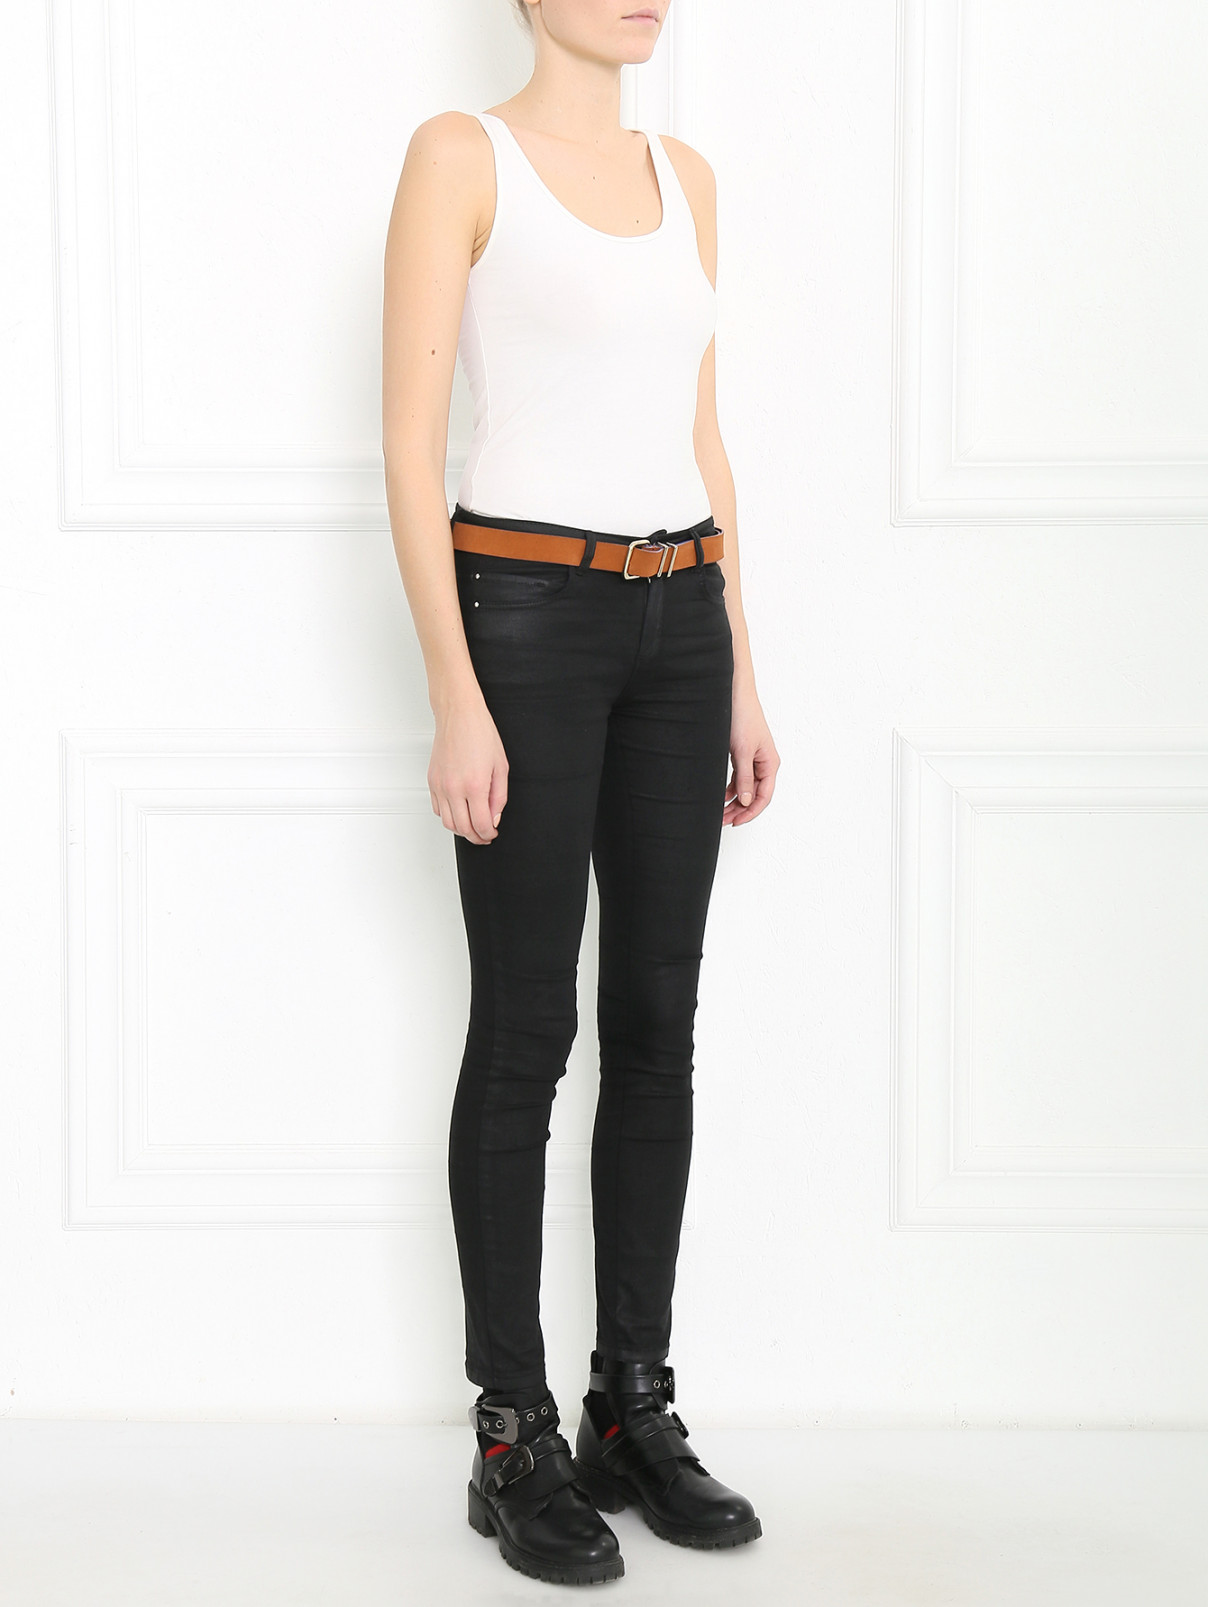 Кожаный ремень с металлической фурнитурой Armani Jeans  –  Модель Общий вид  – Цвет:  Коричневый